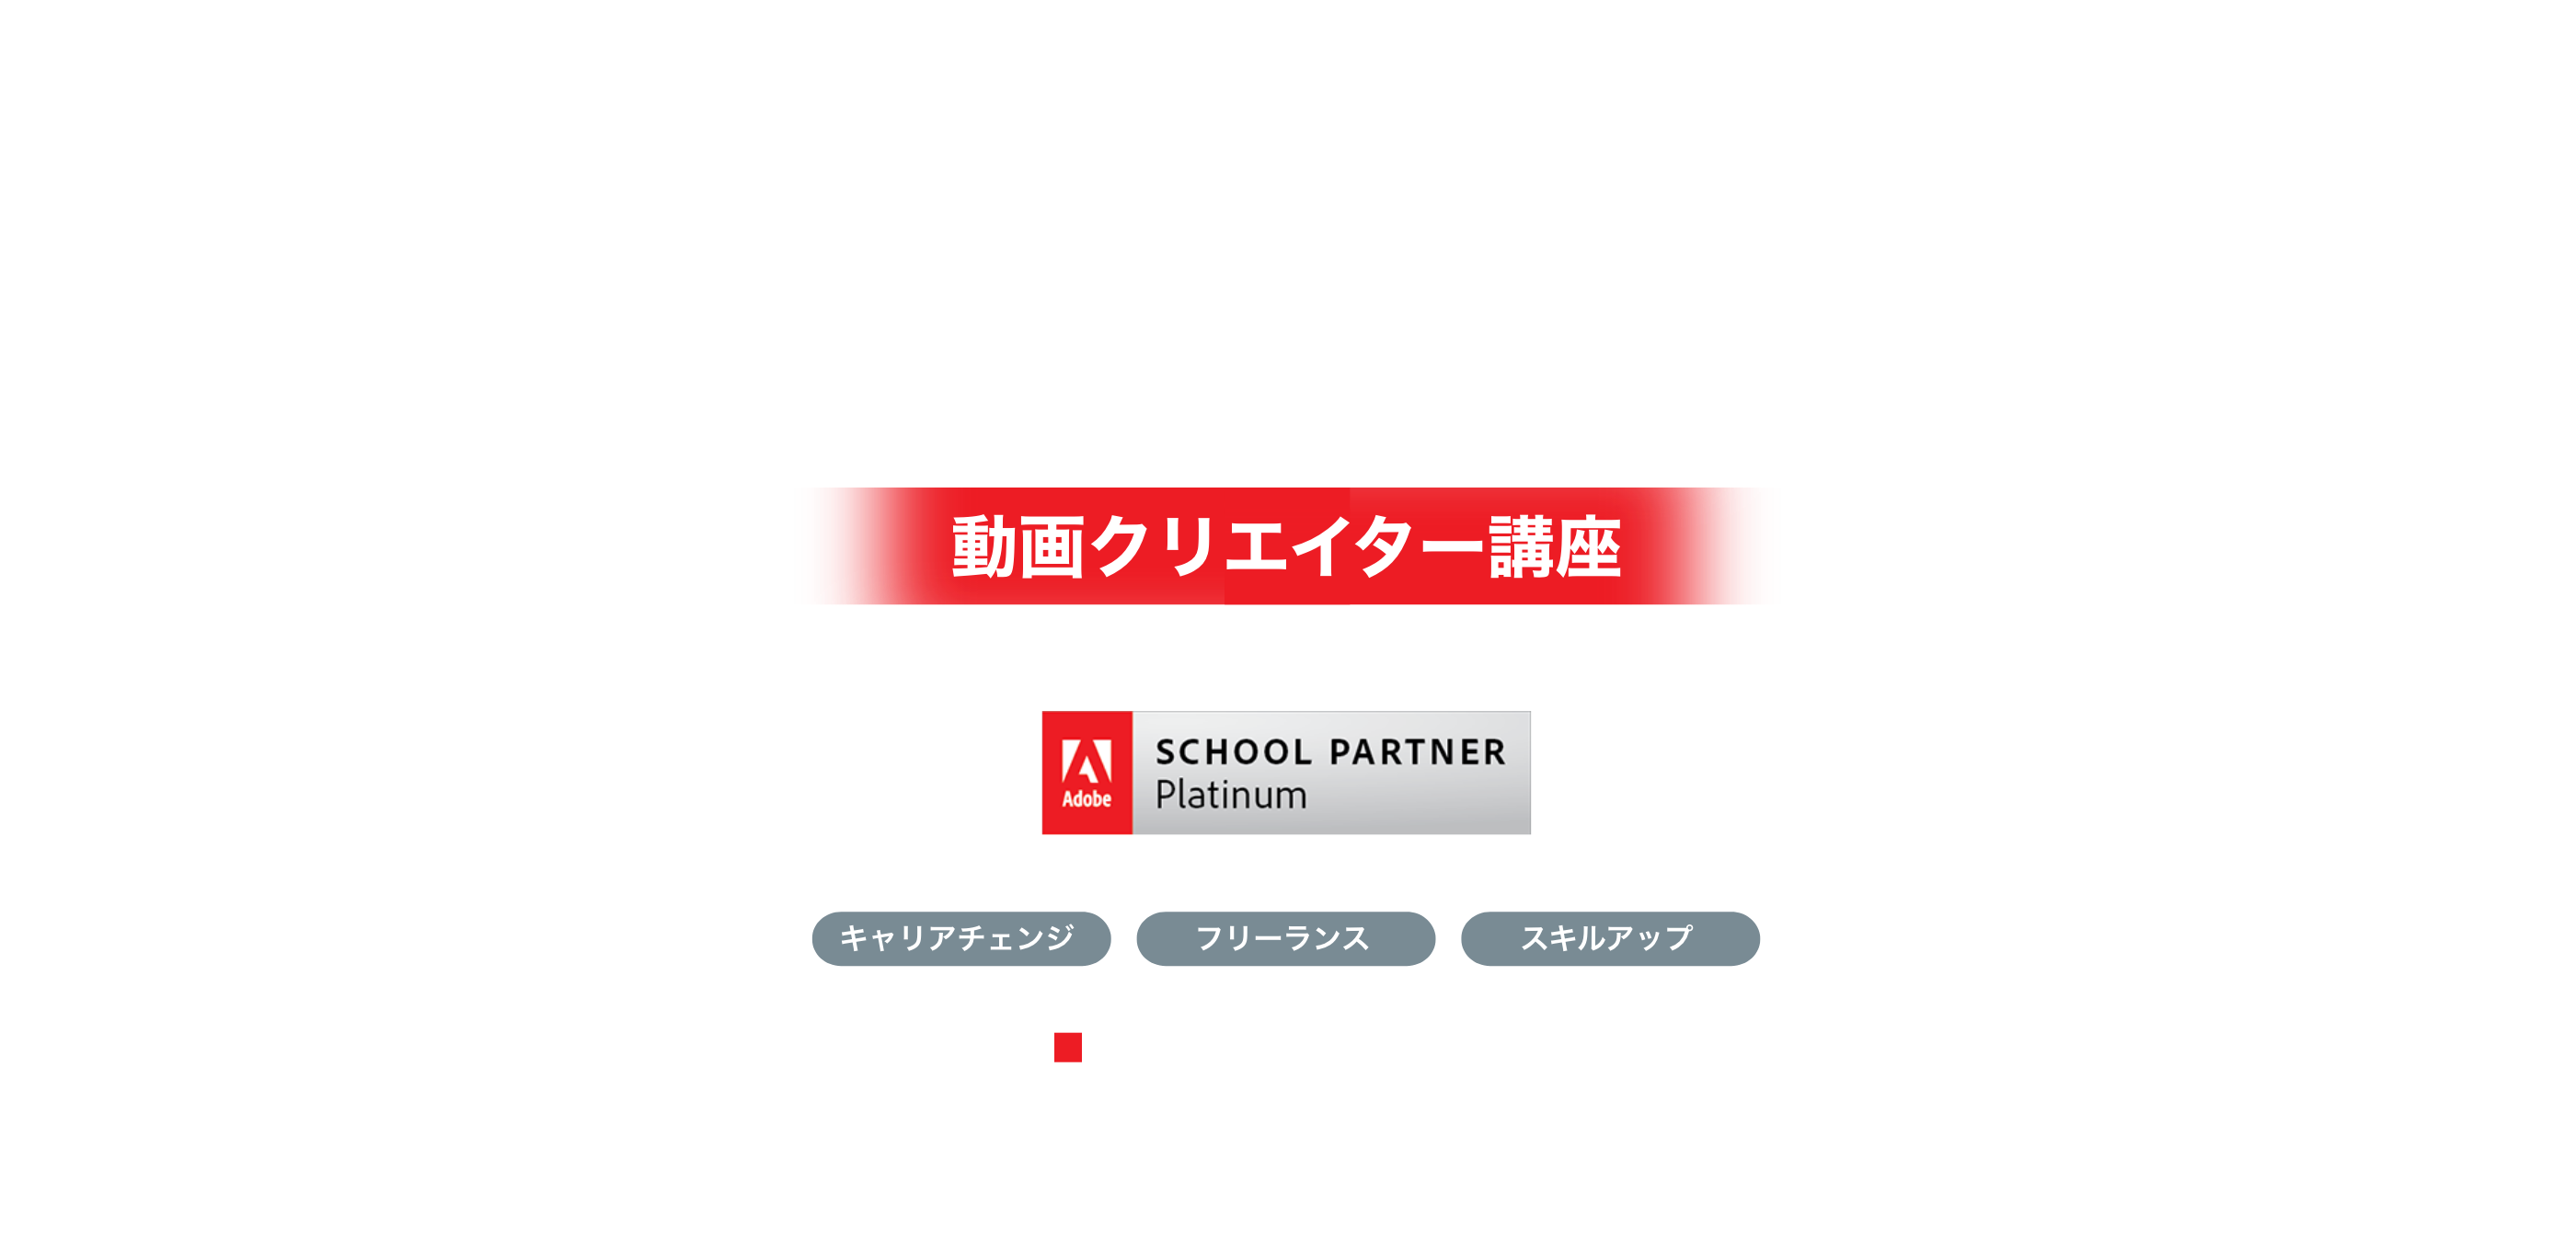 未経験で 動画編集スキルを身につける 転職、副業、スキルアップに。 月々5200円から。動画クリエイター講座